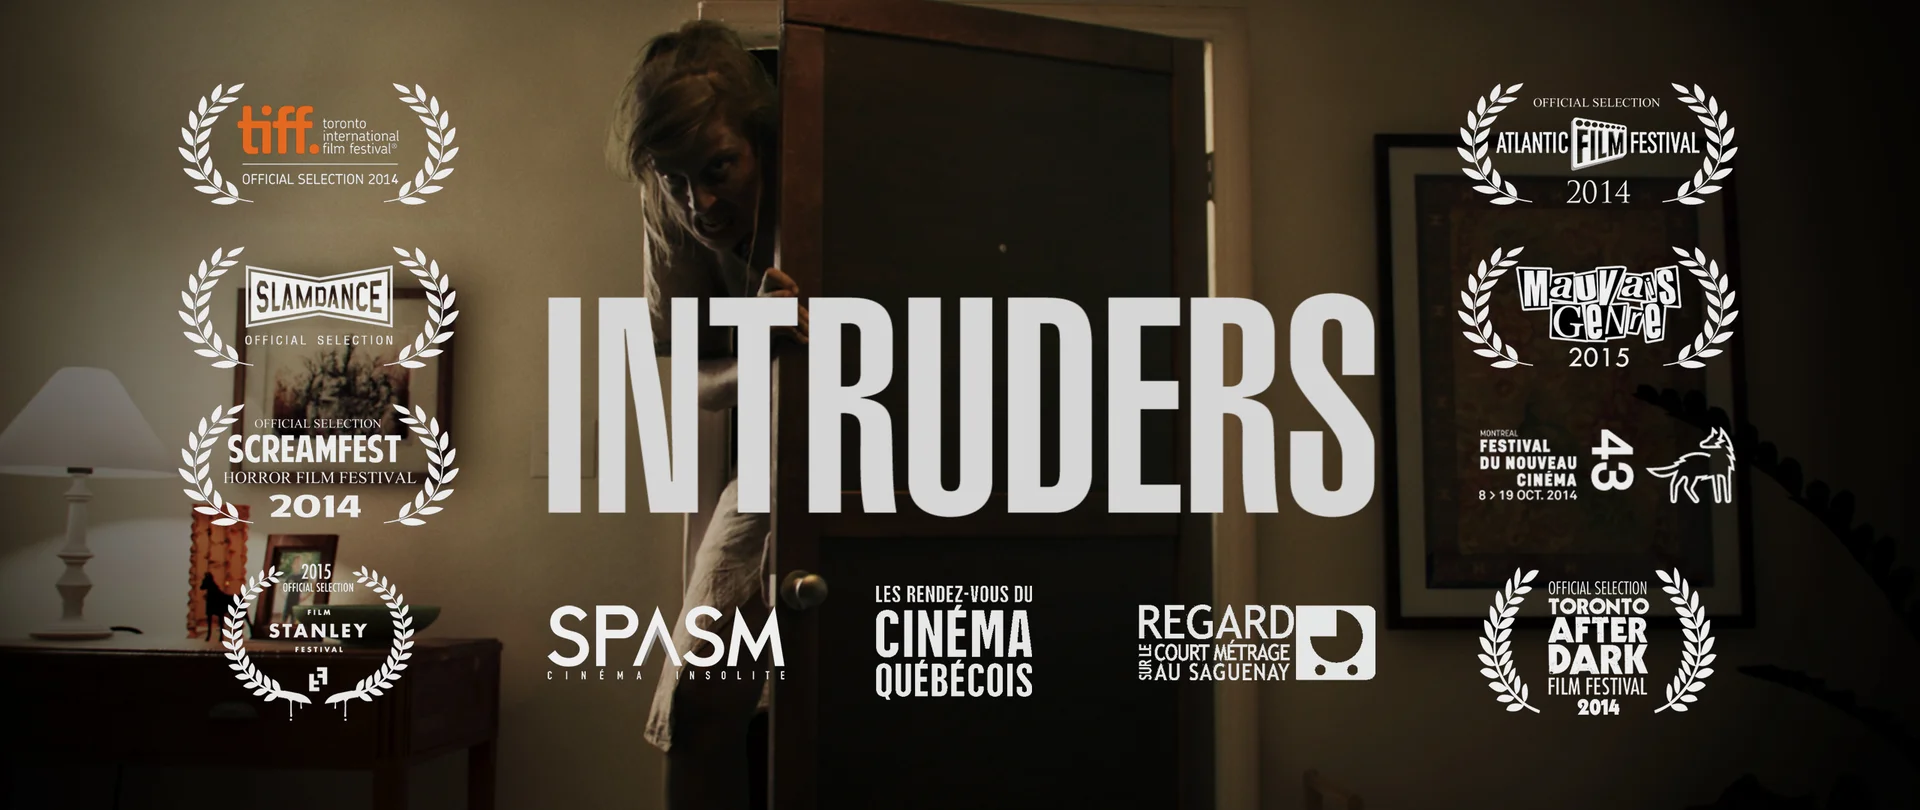 The Intruders (2015) - IMDb